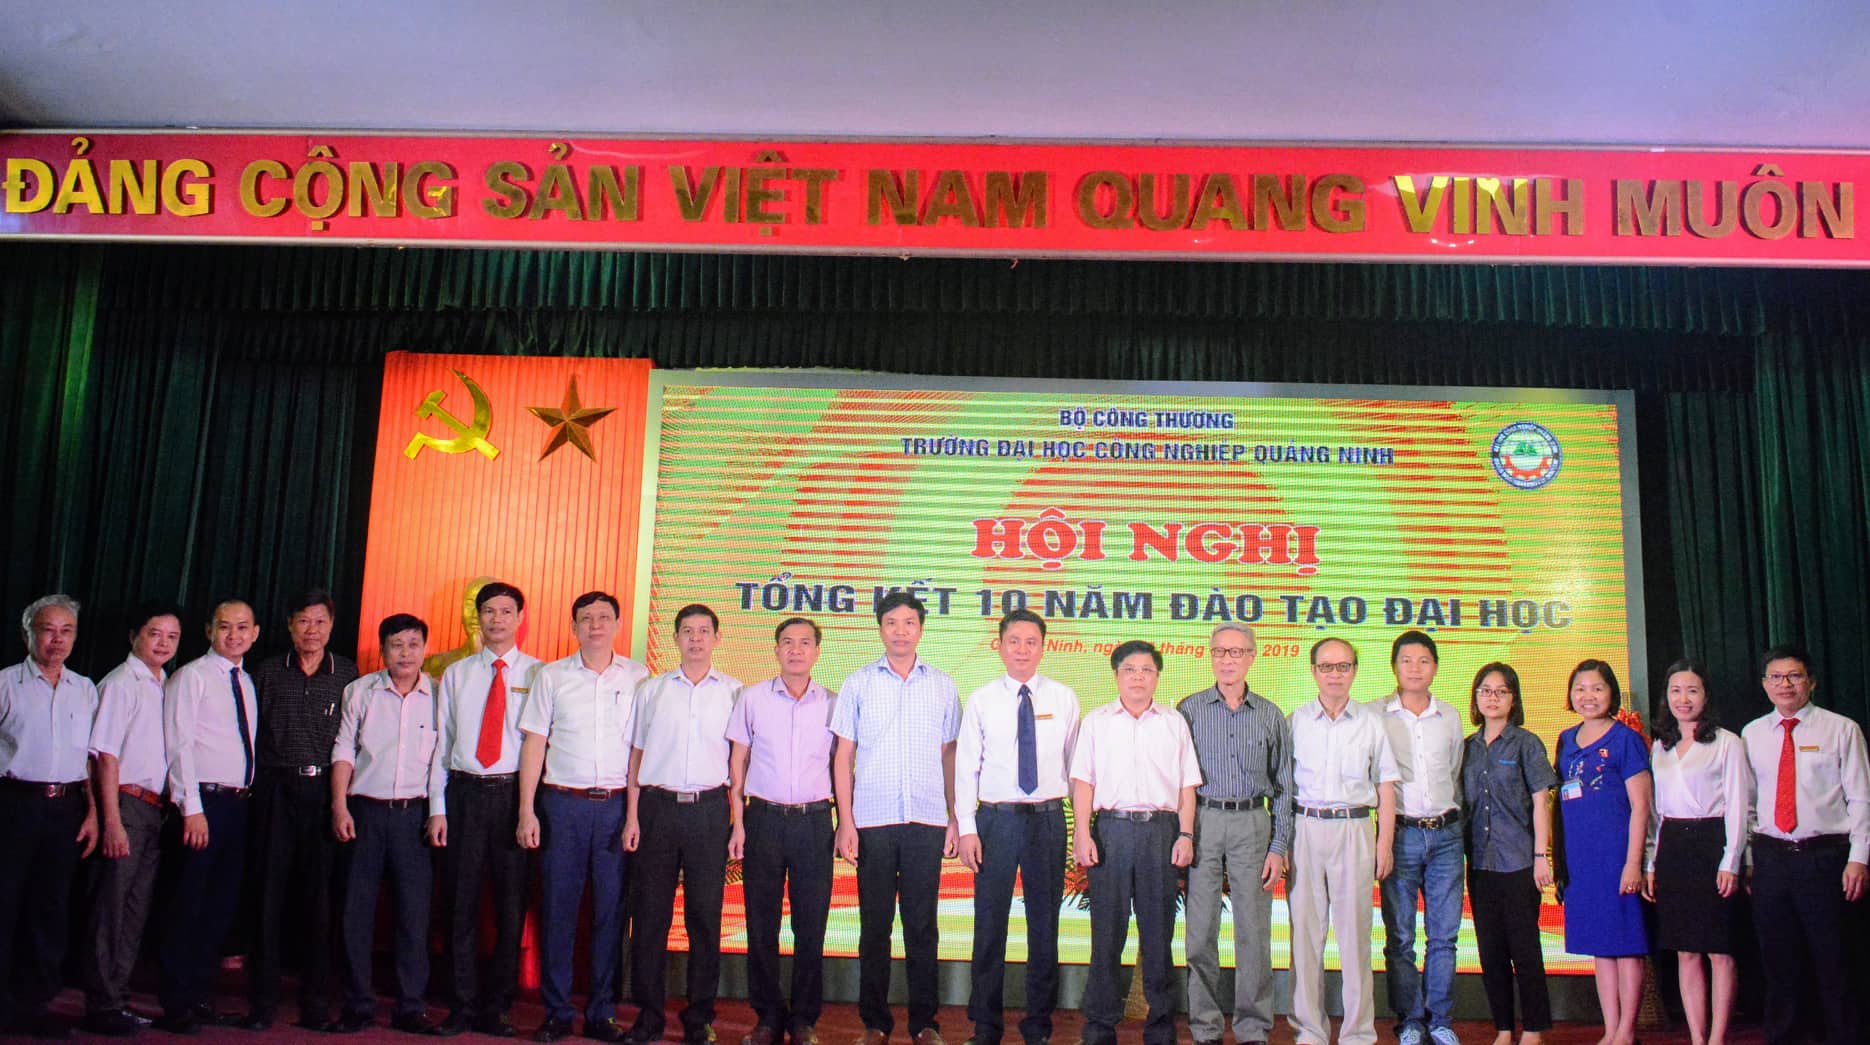 Trường ĐH Công nghiệp Quảng Ninh tổ chức tổng kết 10 năm đào tạo Đại học